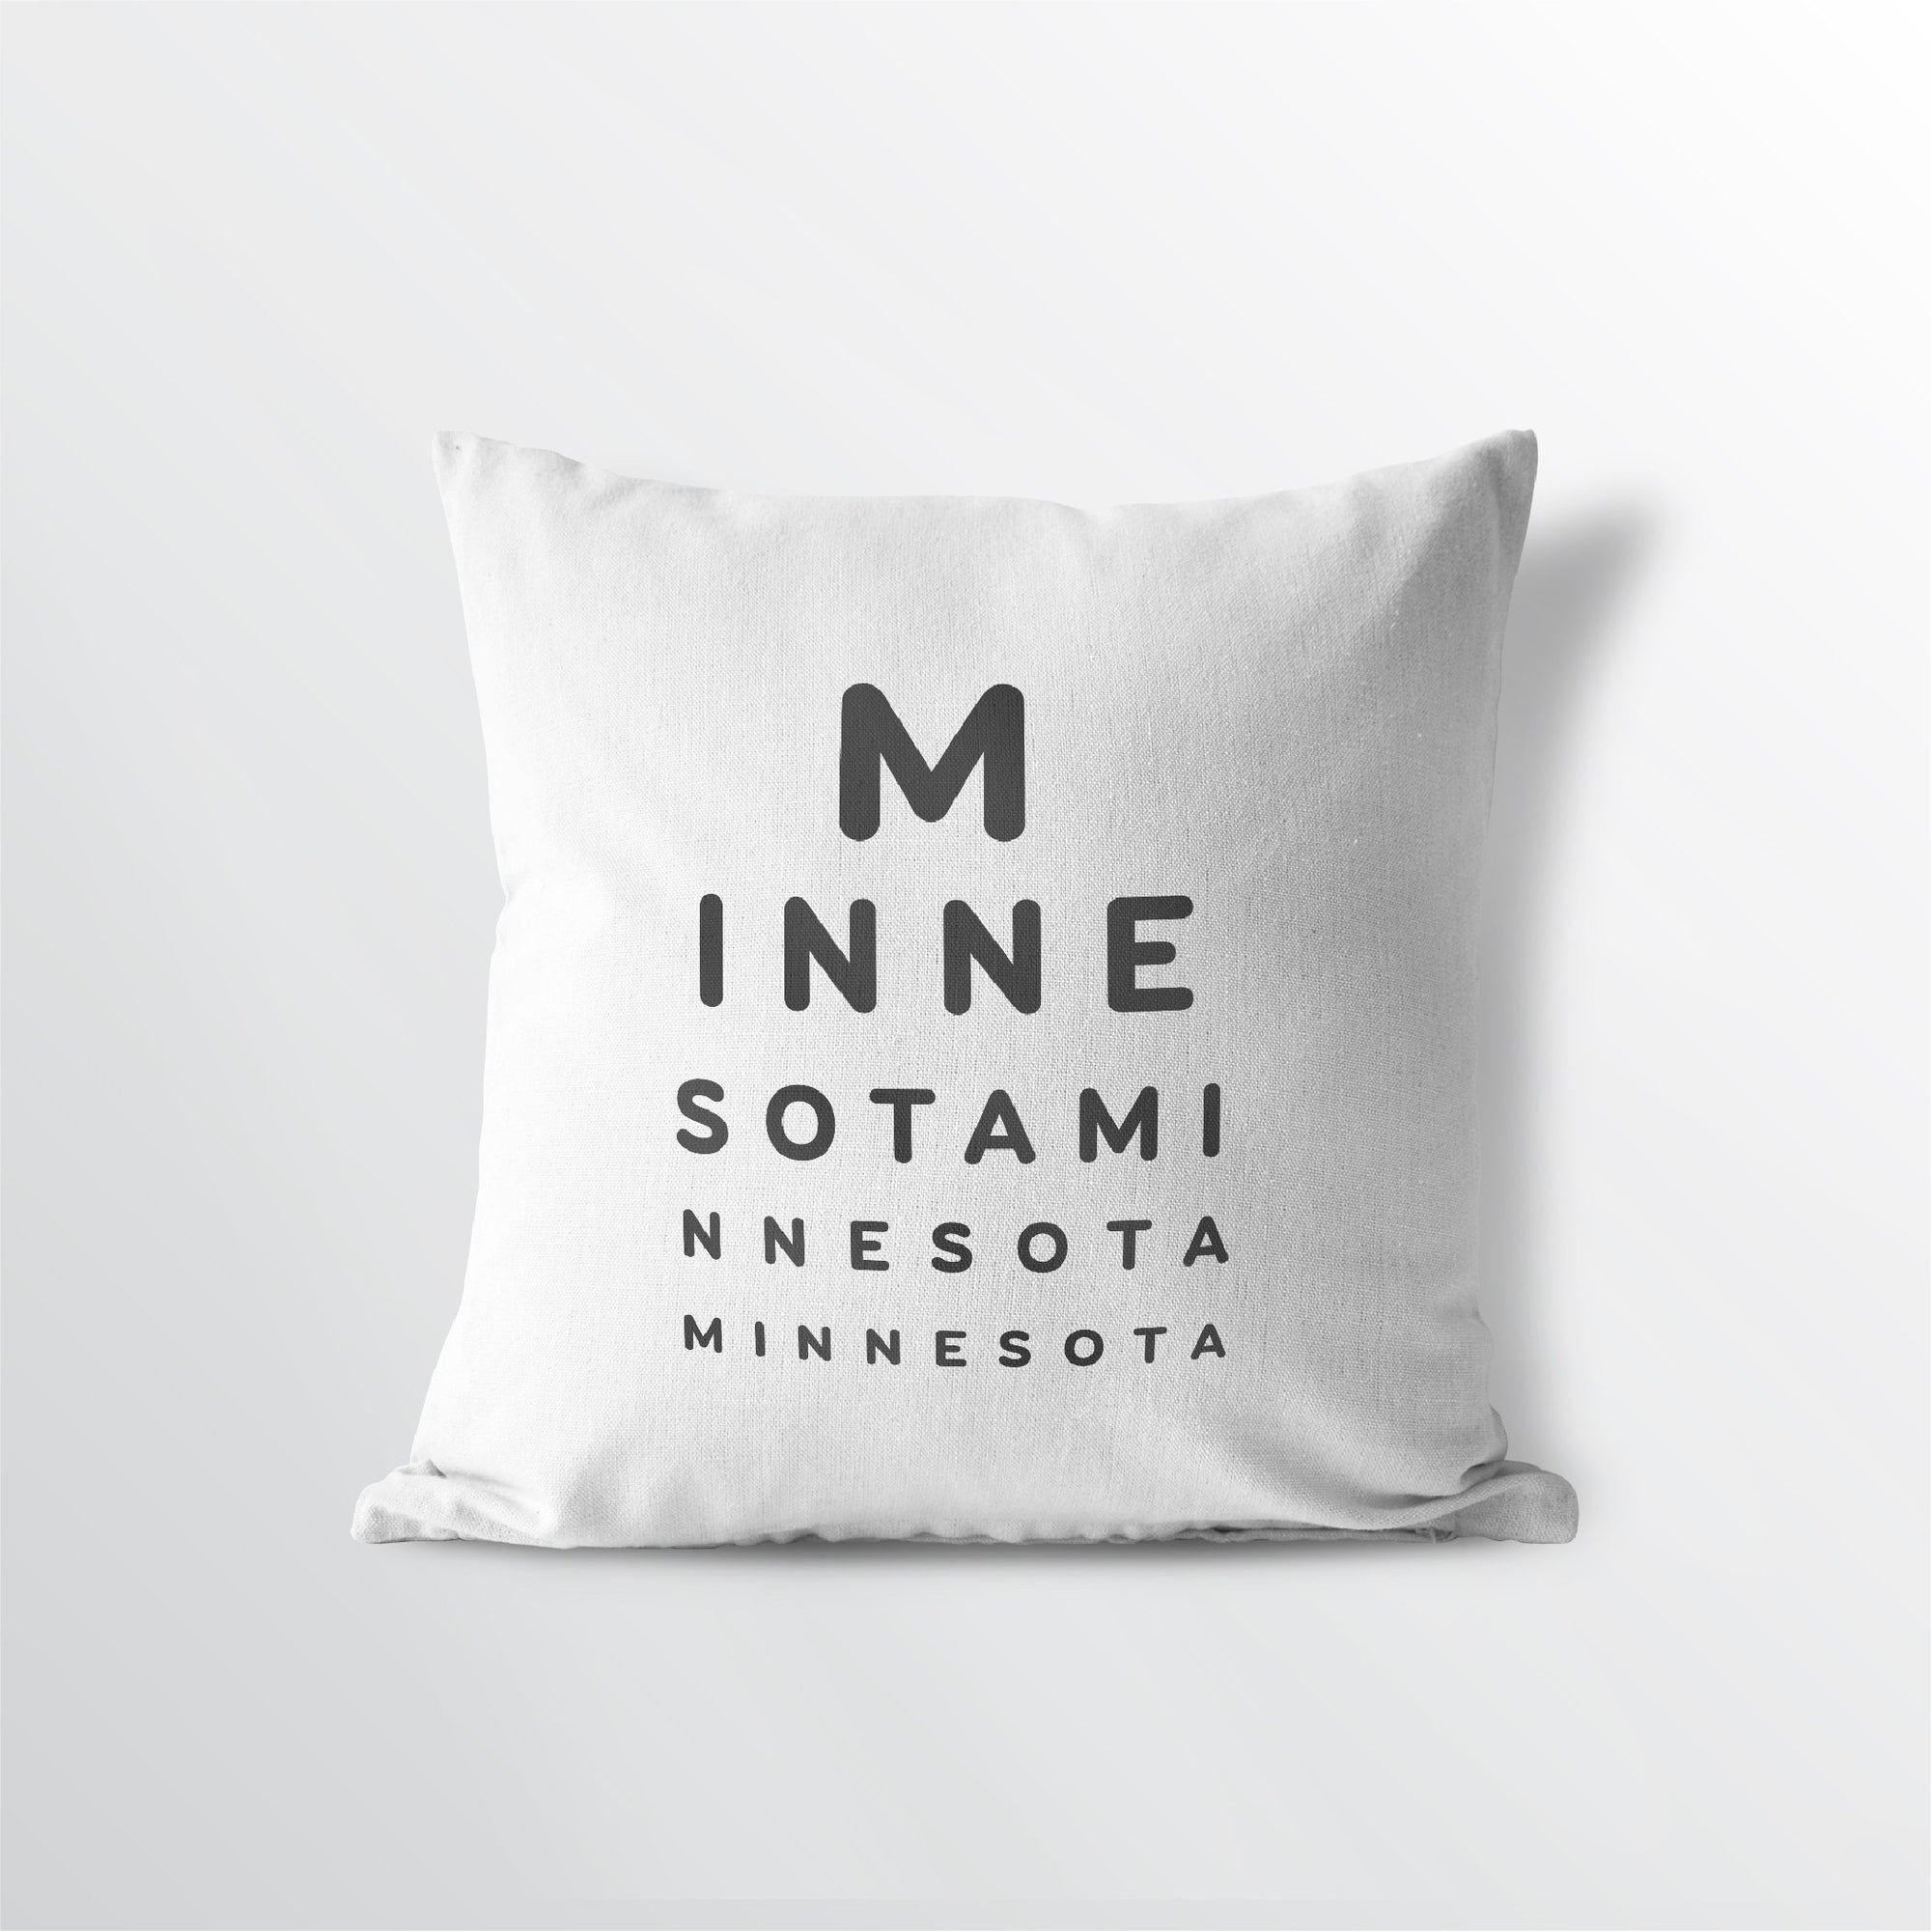 Minnesota "Eye Exam" Throw Pillow